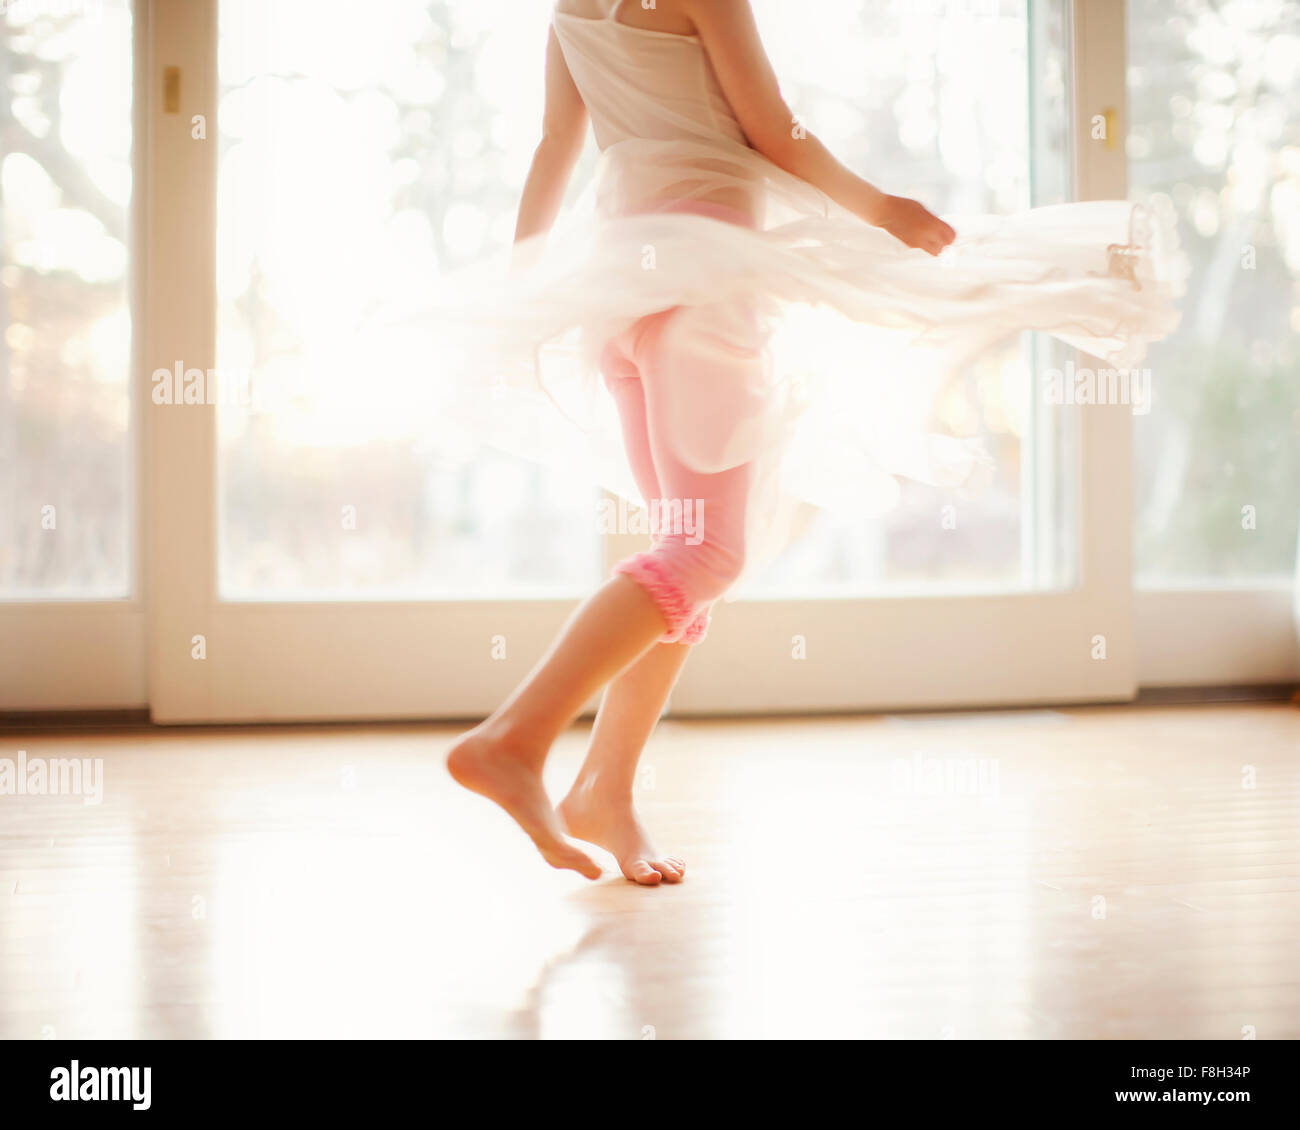 Girl twirling in skirt Stock Photo